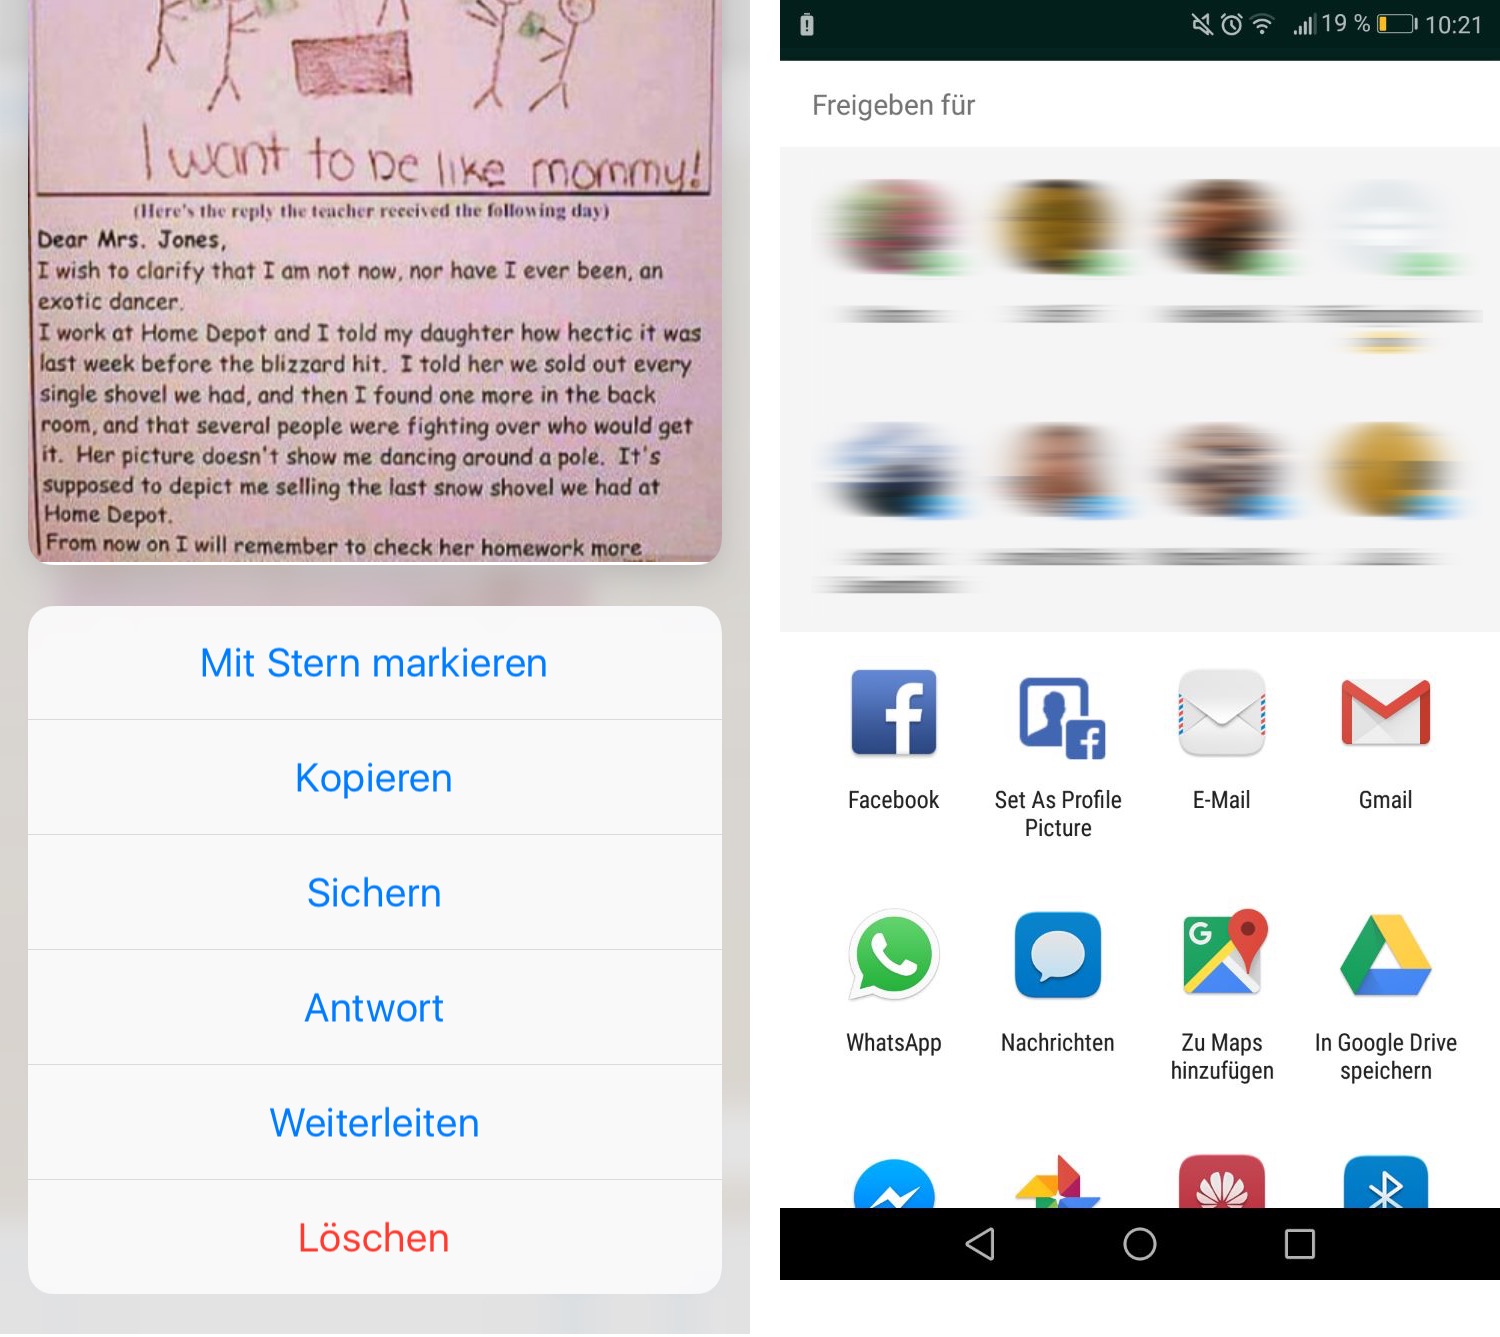 Links iPhone, rechts Android: So unterschiedlich der WhatsApp-Speicherdialog ist, so identisch die Vorgehensweise.